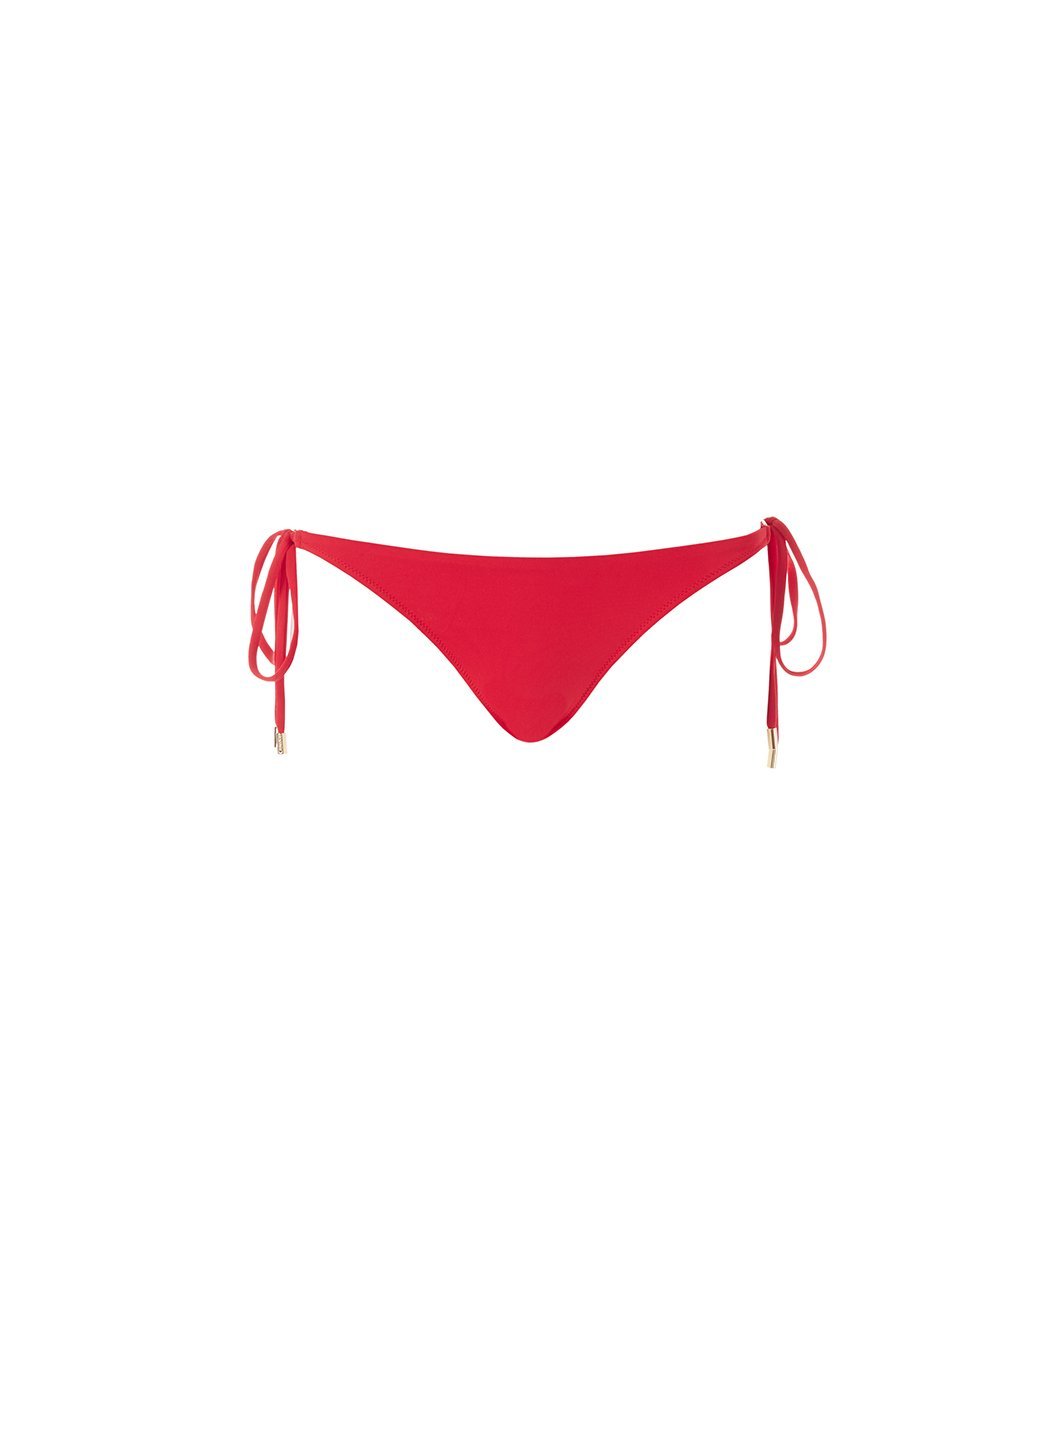 exclusive cancun bikini bottoms red 2019